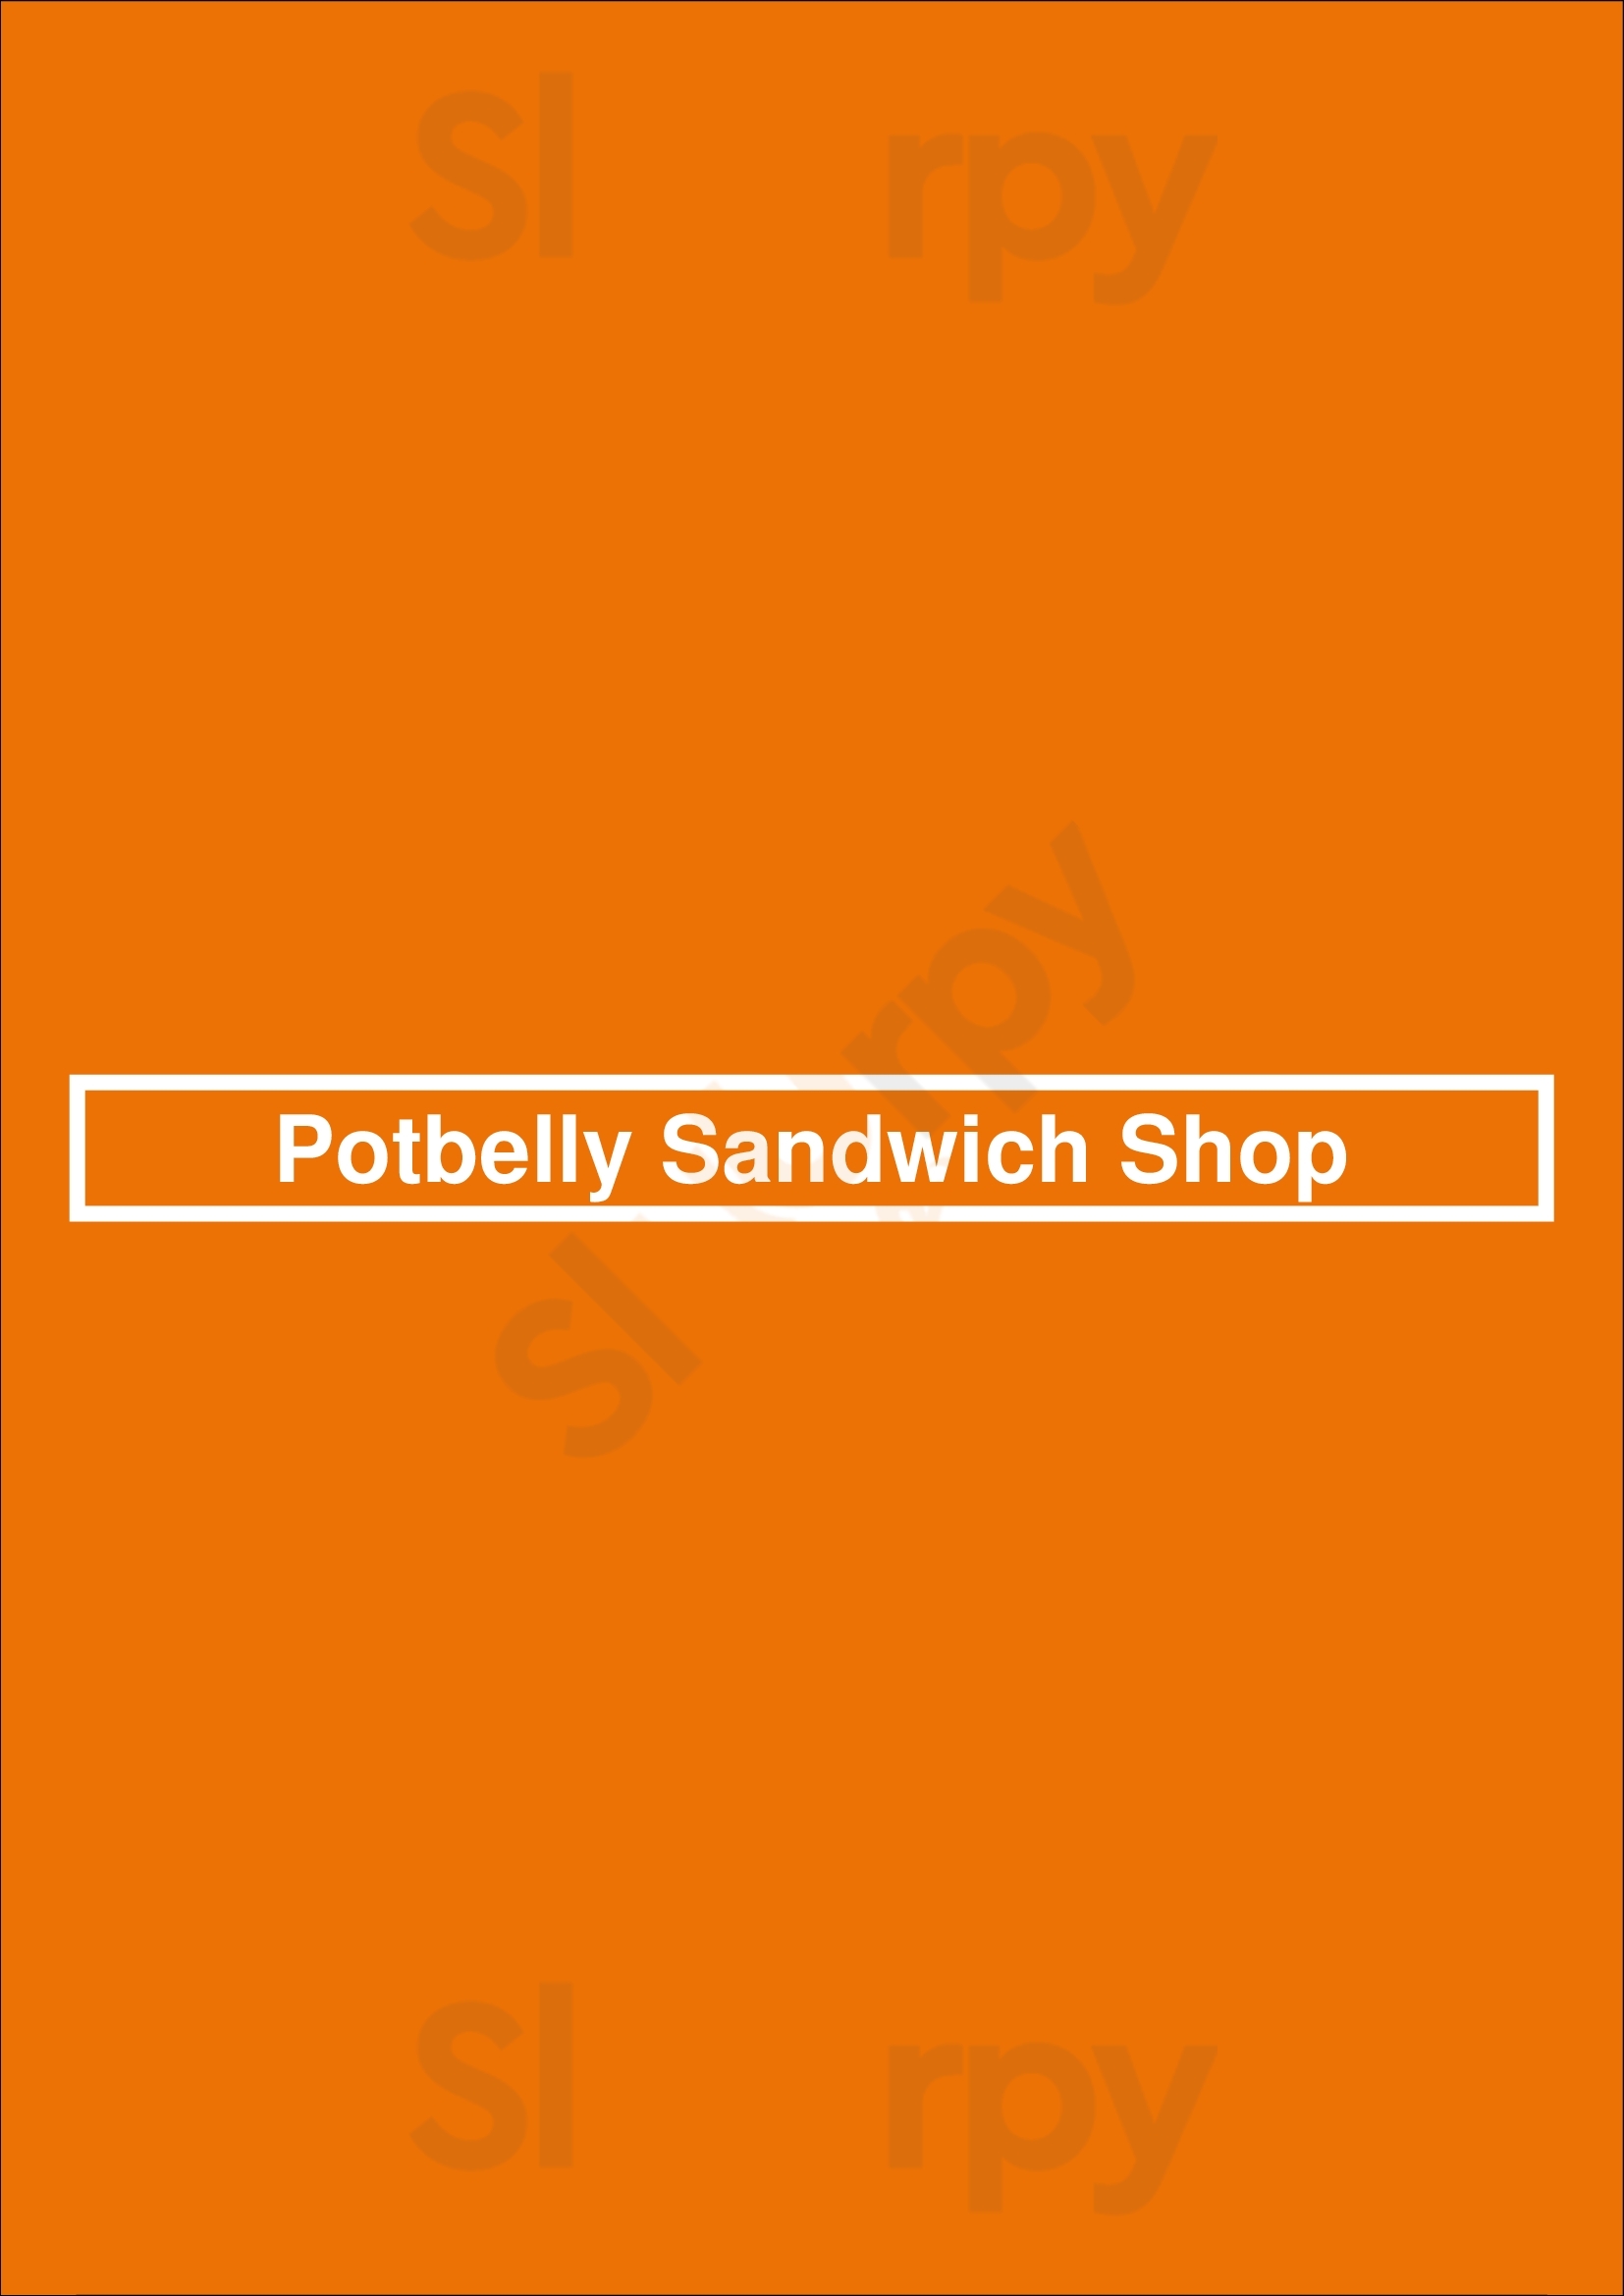 Potbelly Sandwich Shop West Chester Menu - 1